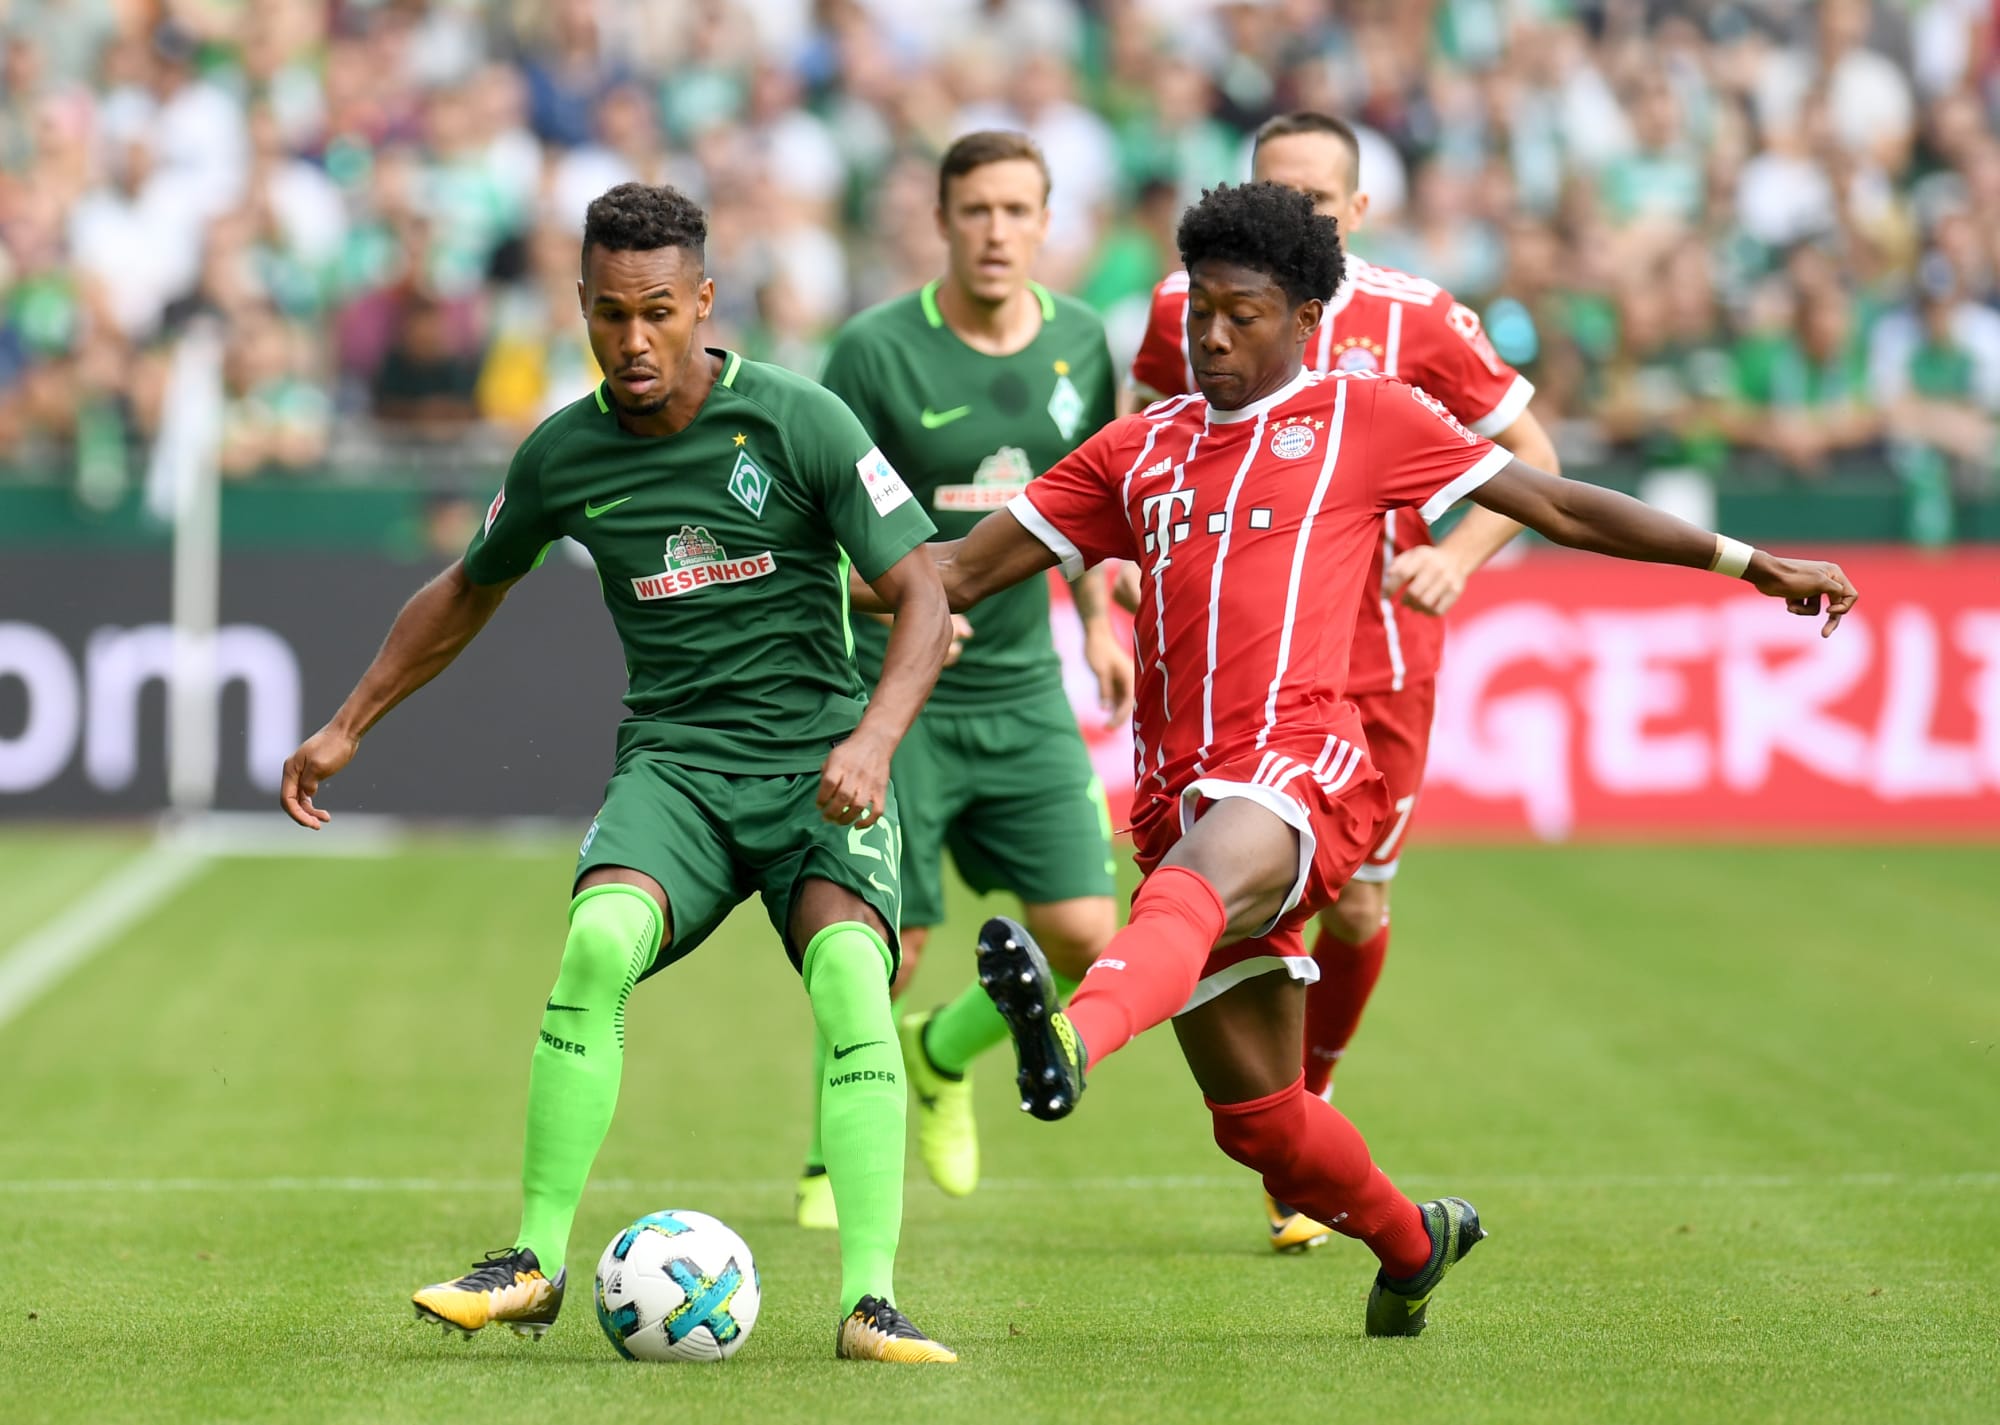 Bayern Munich host Werder Bremen on Bundesliga matchday 19